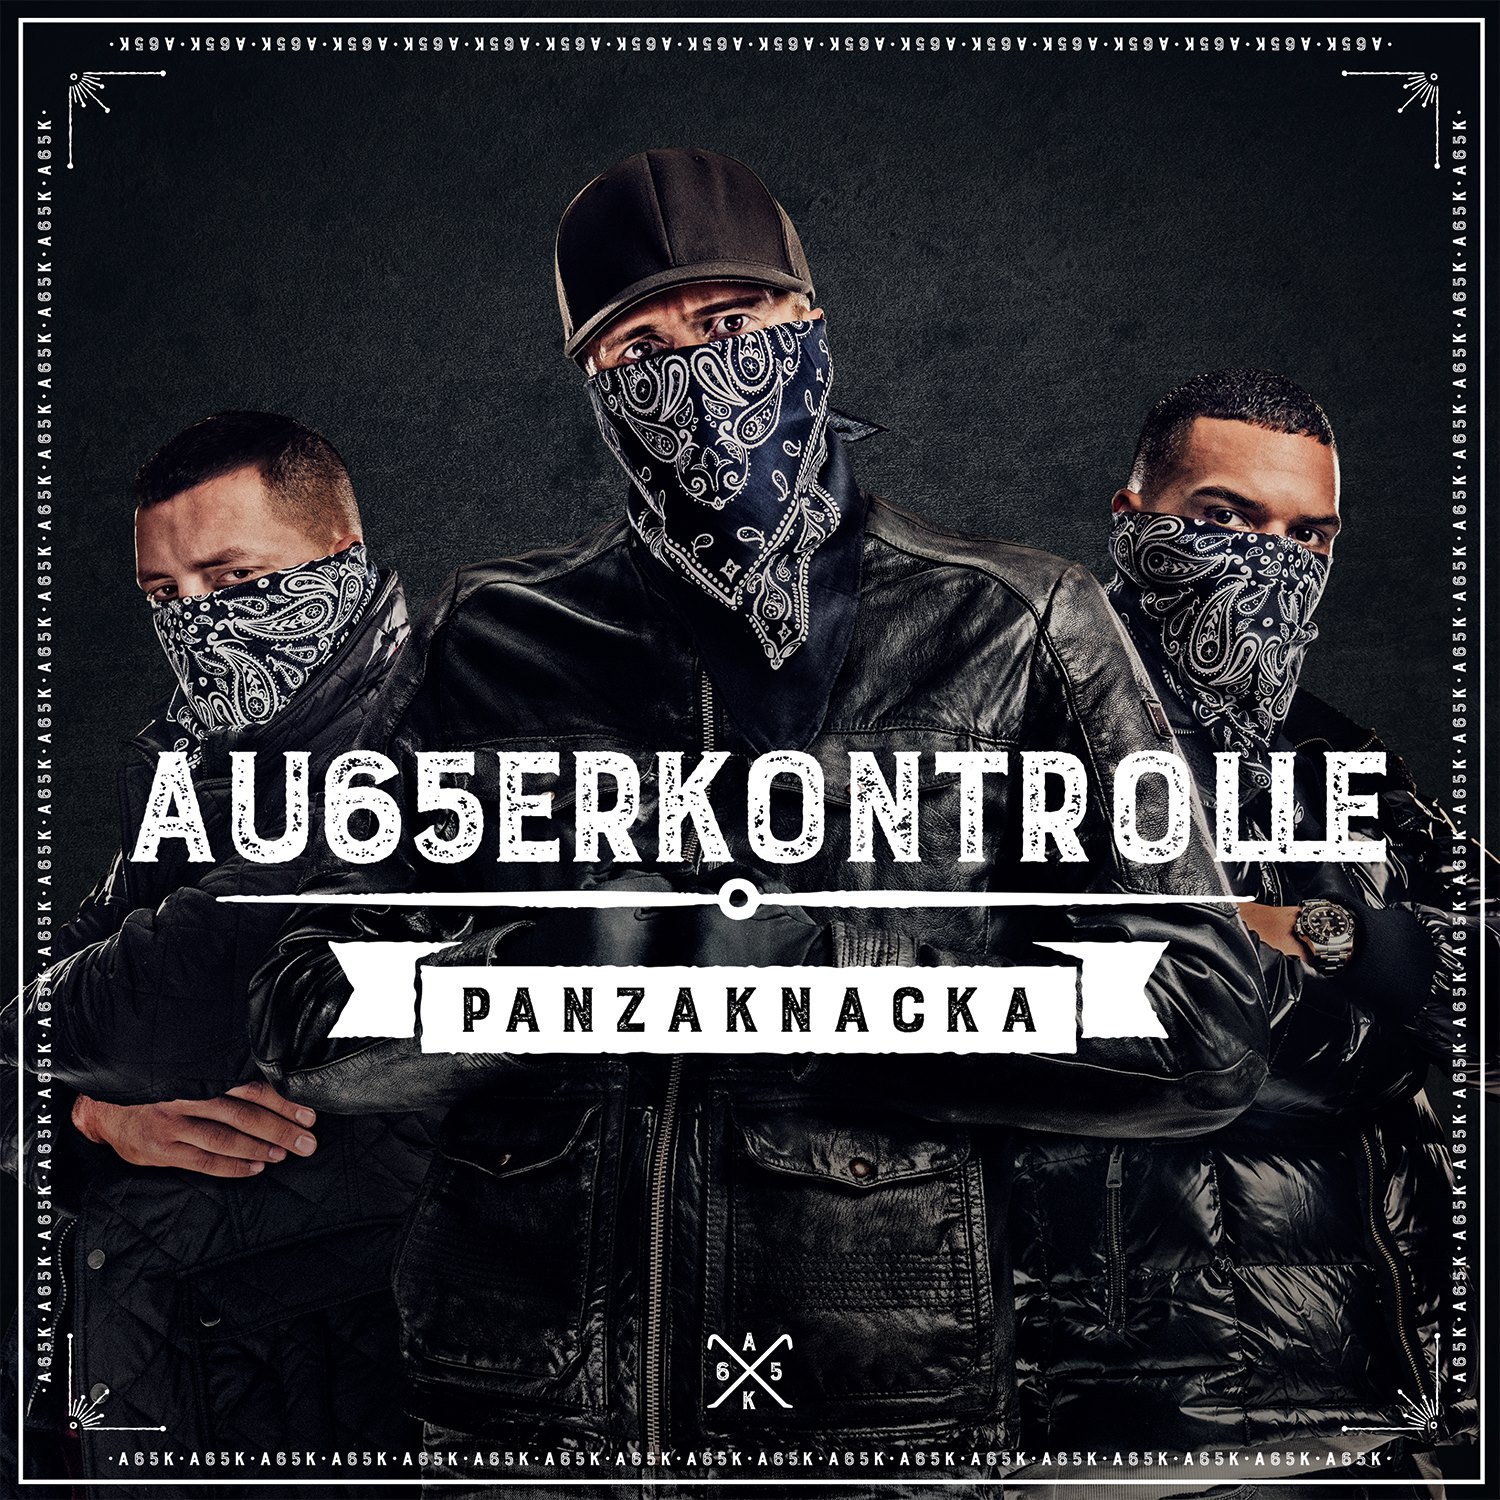 ak-ausserkontrolle-ver-ffentlichen-tracklist-features-von-panzaknacka-rap-de